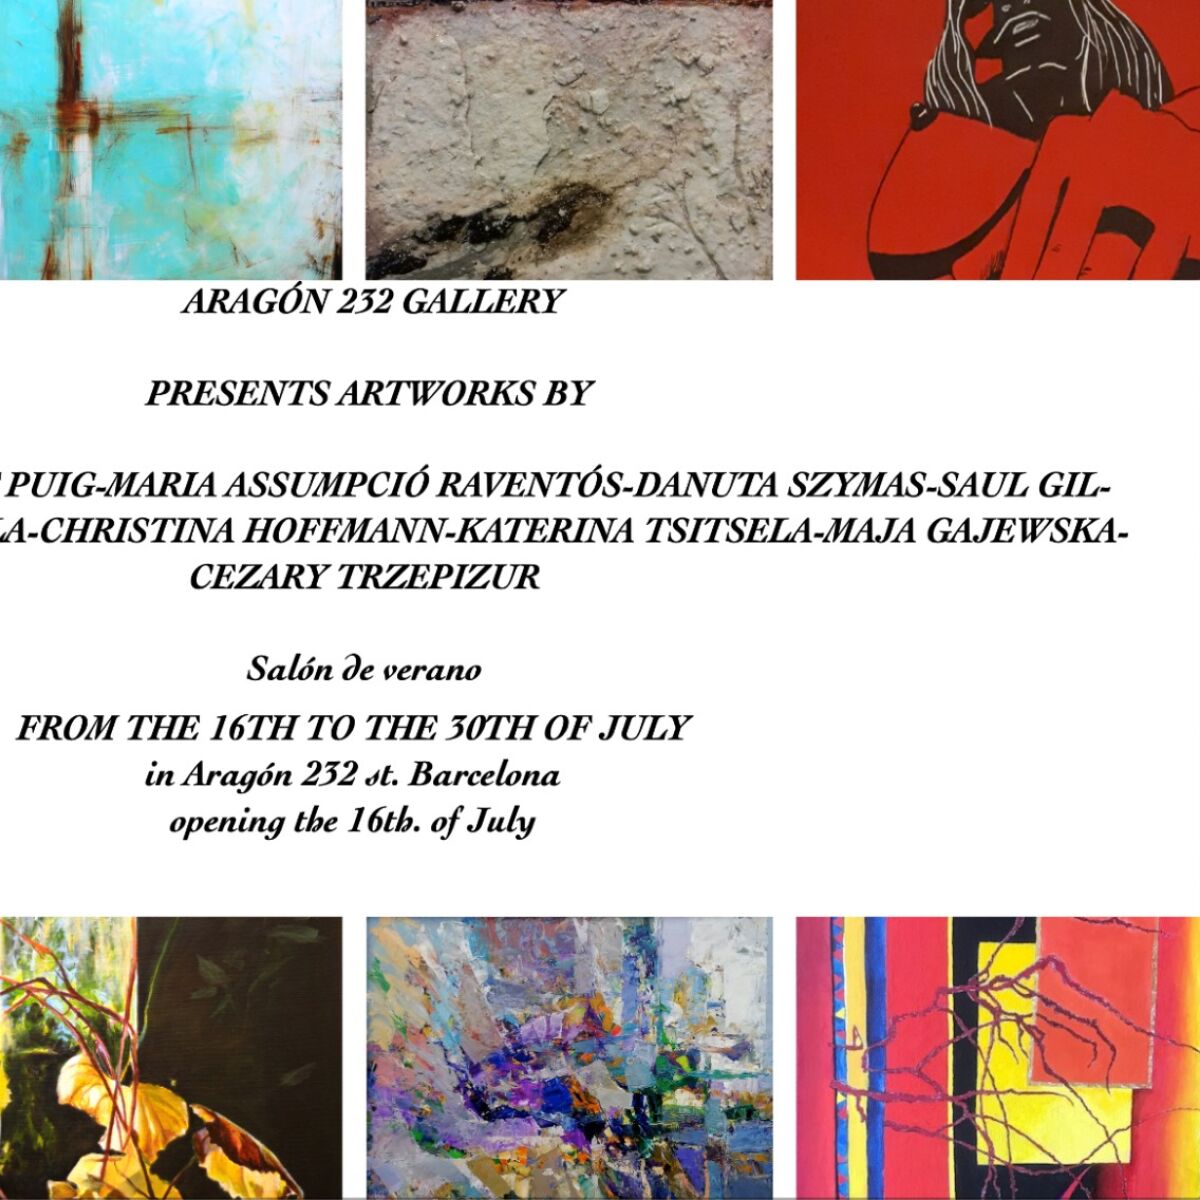 Aragon 232 Gallery